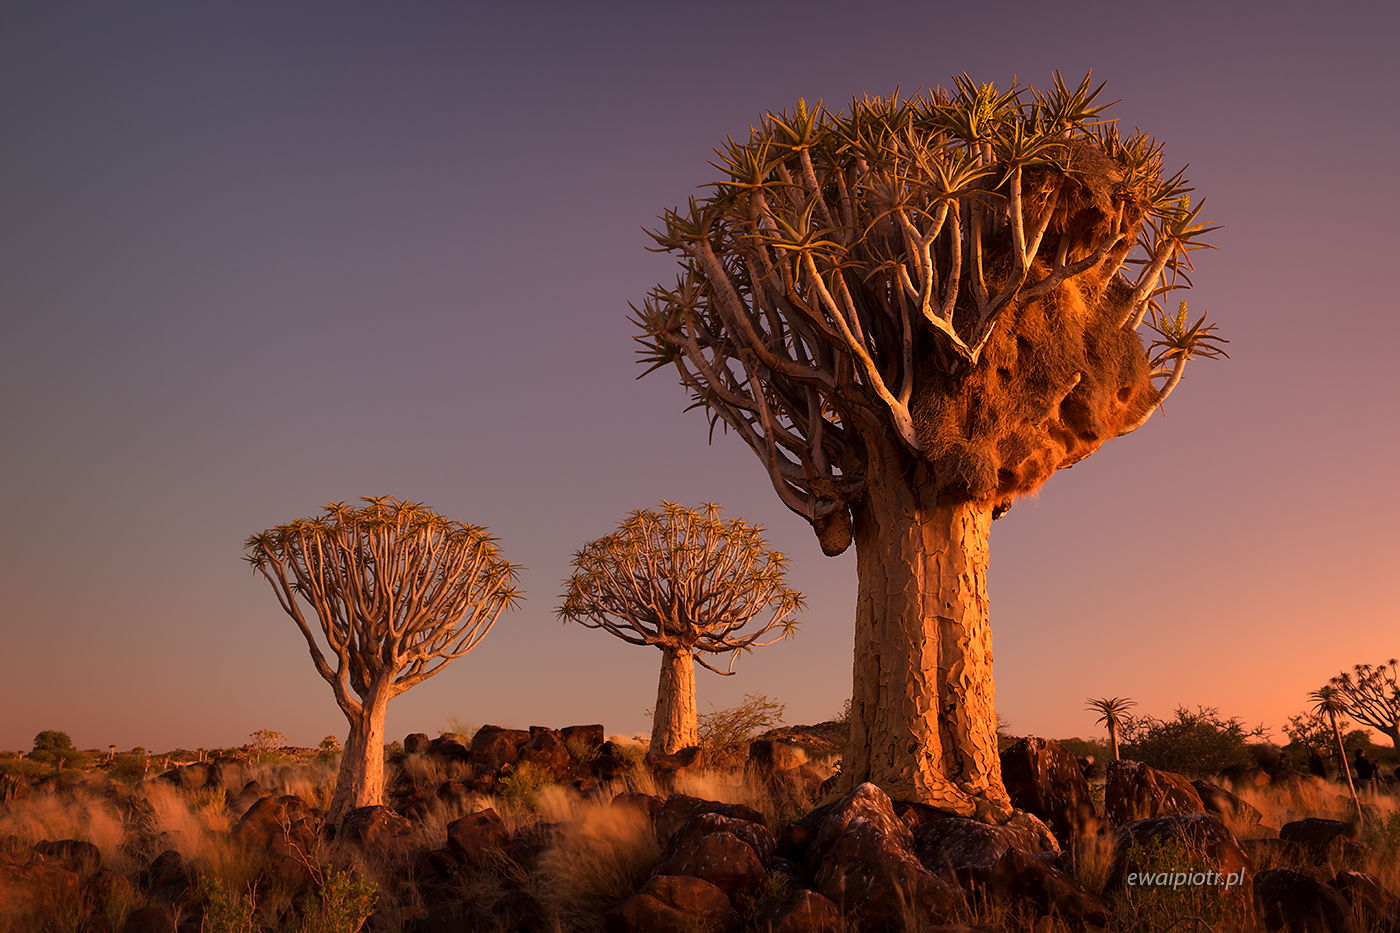 Drzewa kołczanowe i gniazdo wikłaczy, Namibia, warsztaty fotograficzne